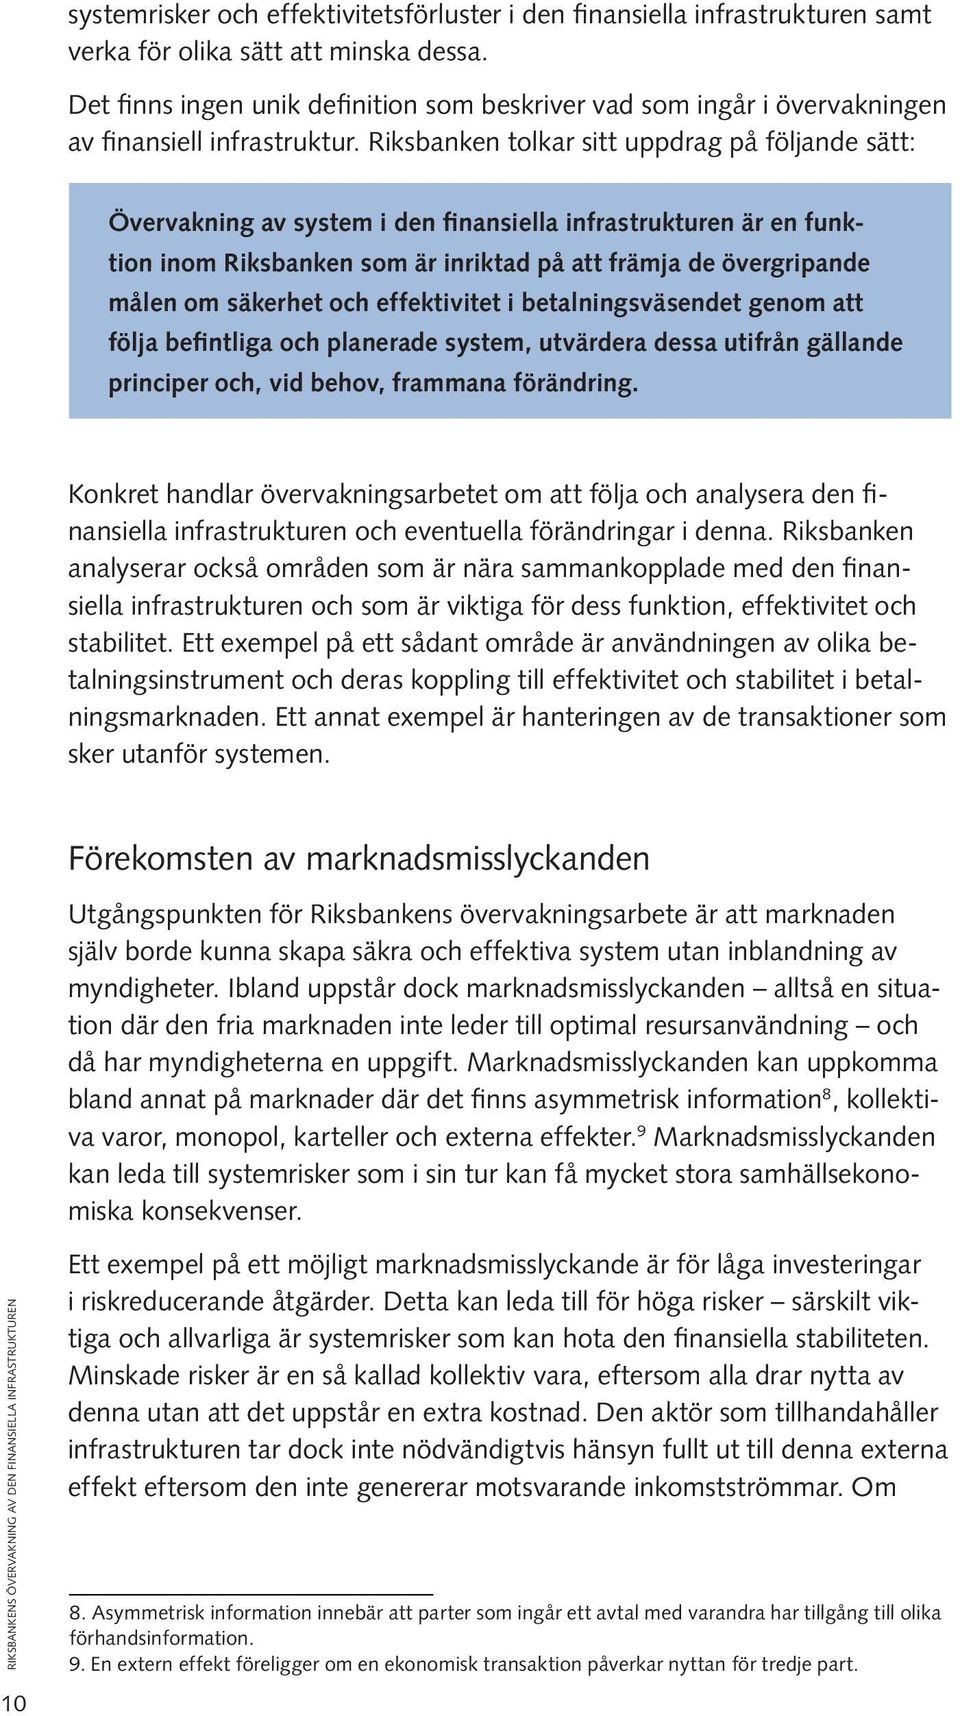 Riksbanken tolkar sitt uppdrag på följande sätt: Övervakning av system i den finansiella infrastrukturen är en funktion inom Riksbanken som är inriktad på att främja de övergripande målen om säkerhet